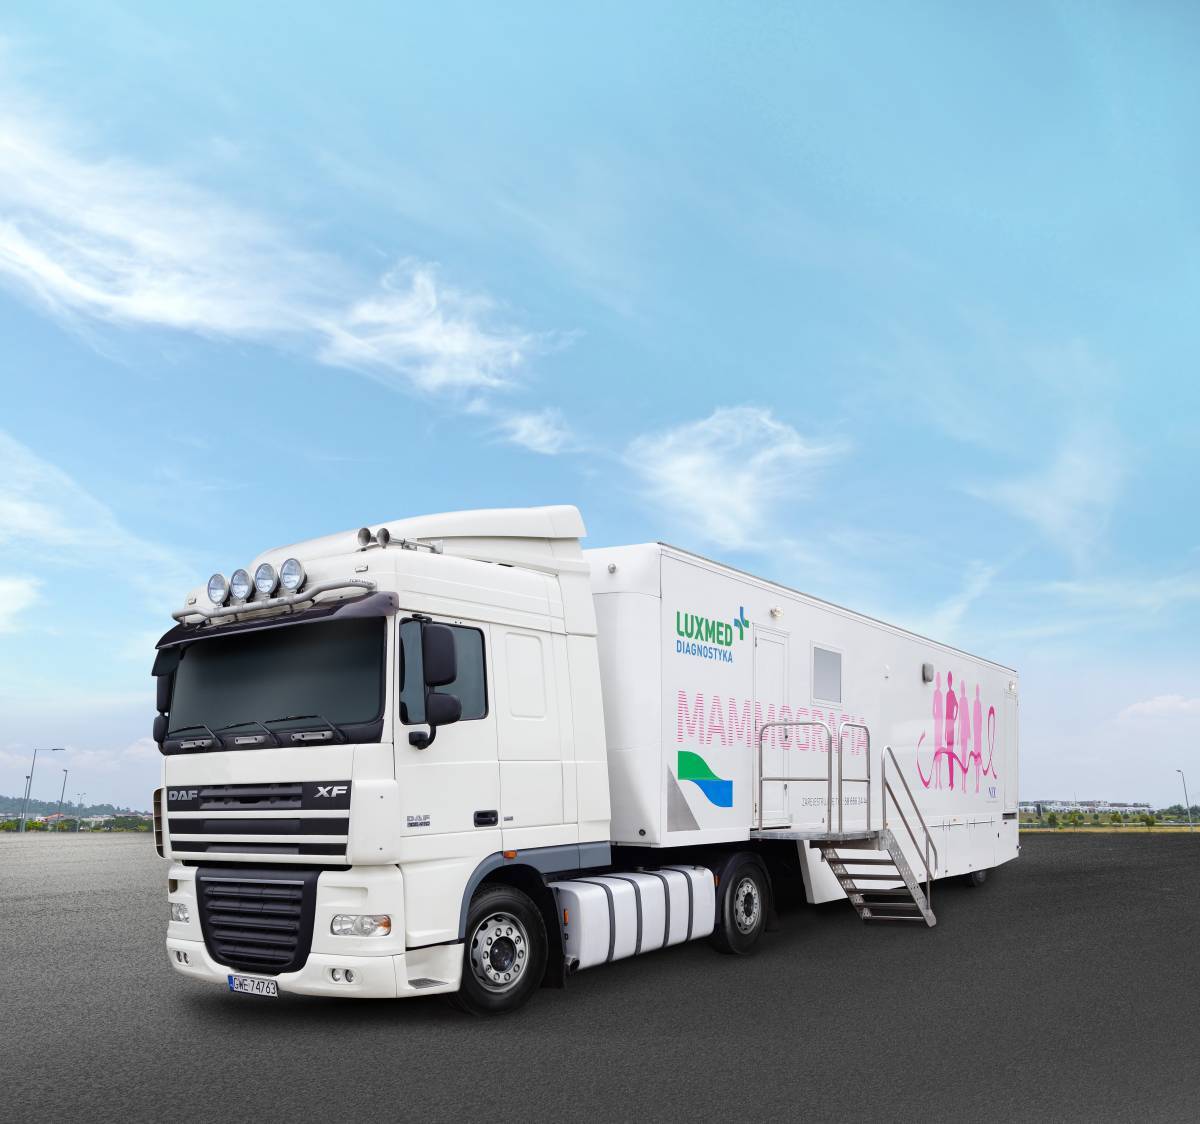 Ciężarówka przystosowana do wykonywania mammografii